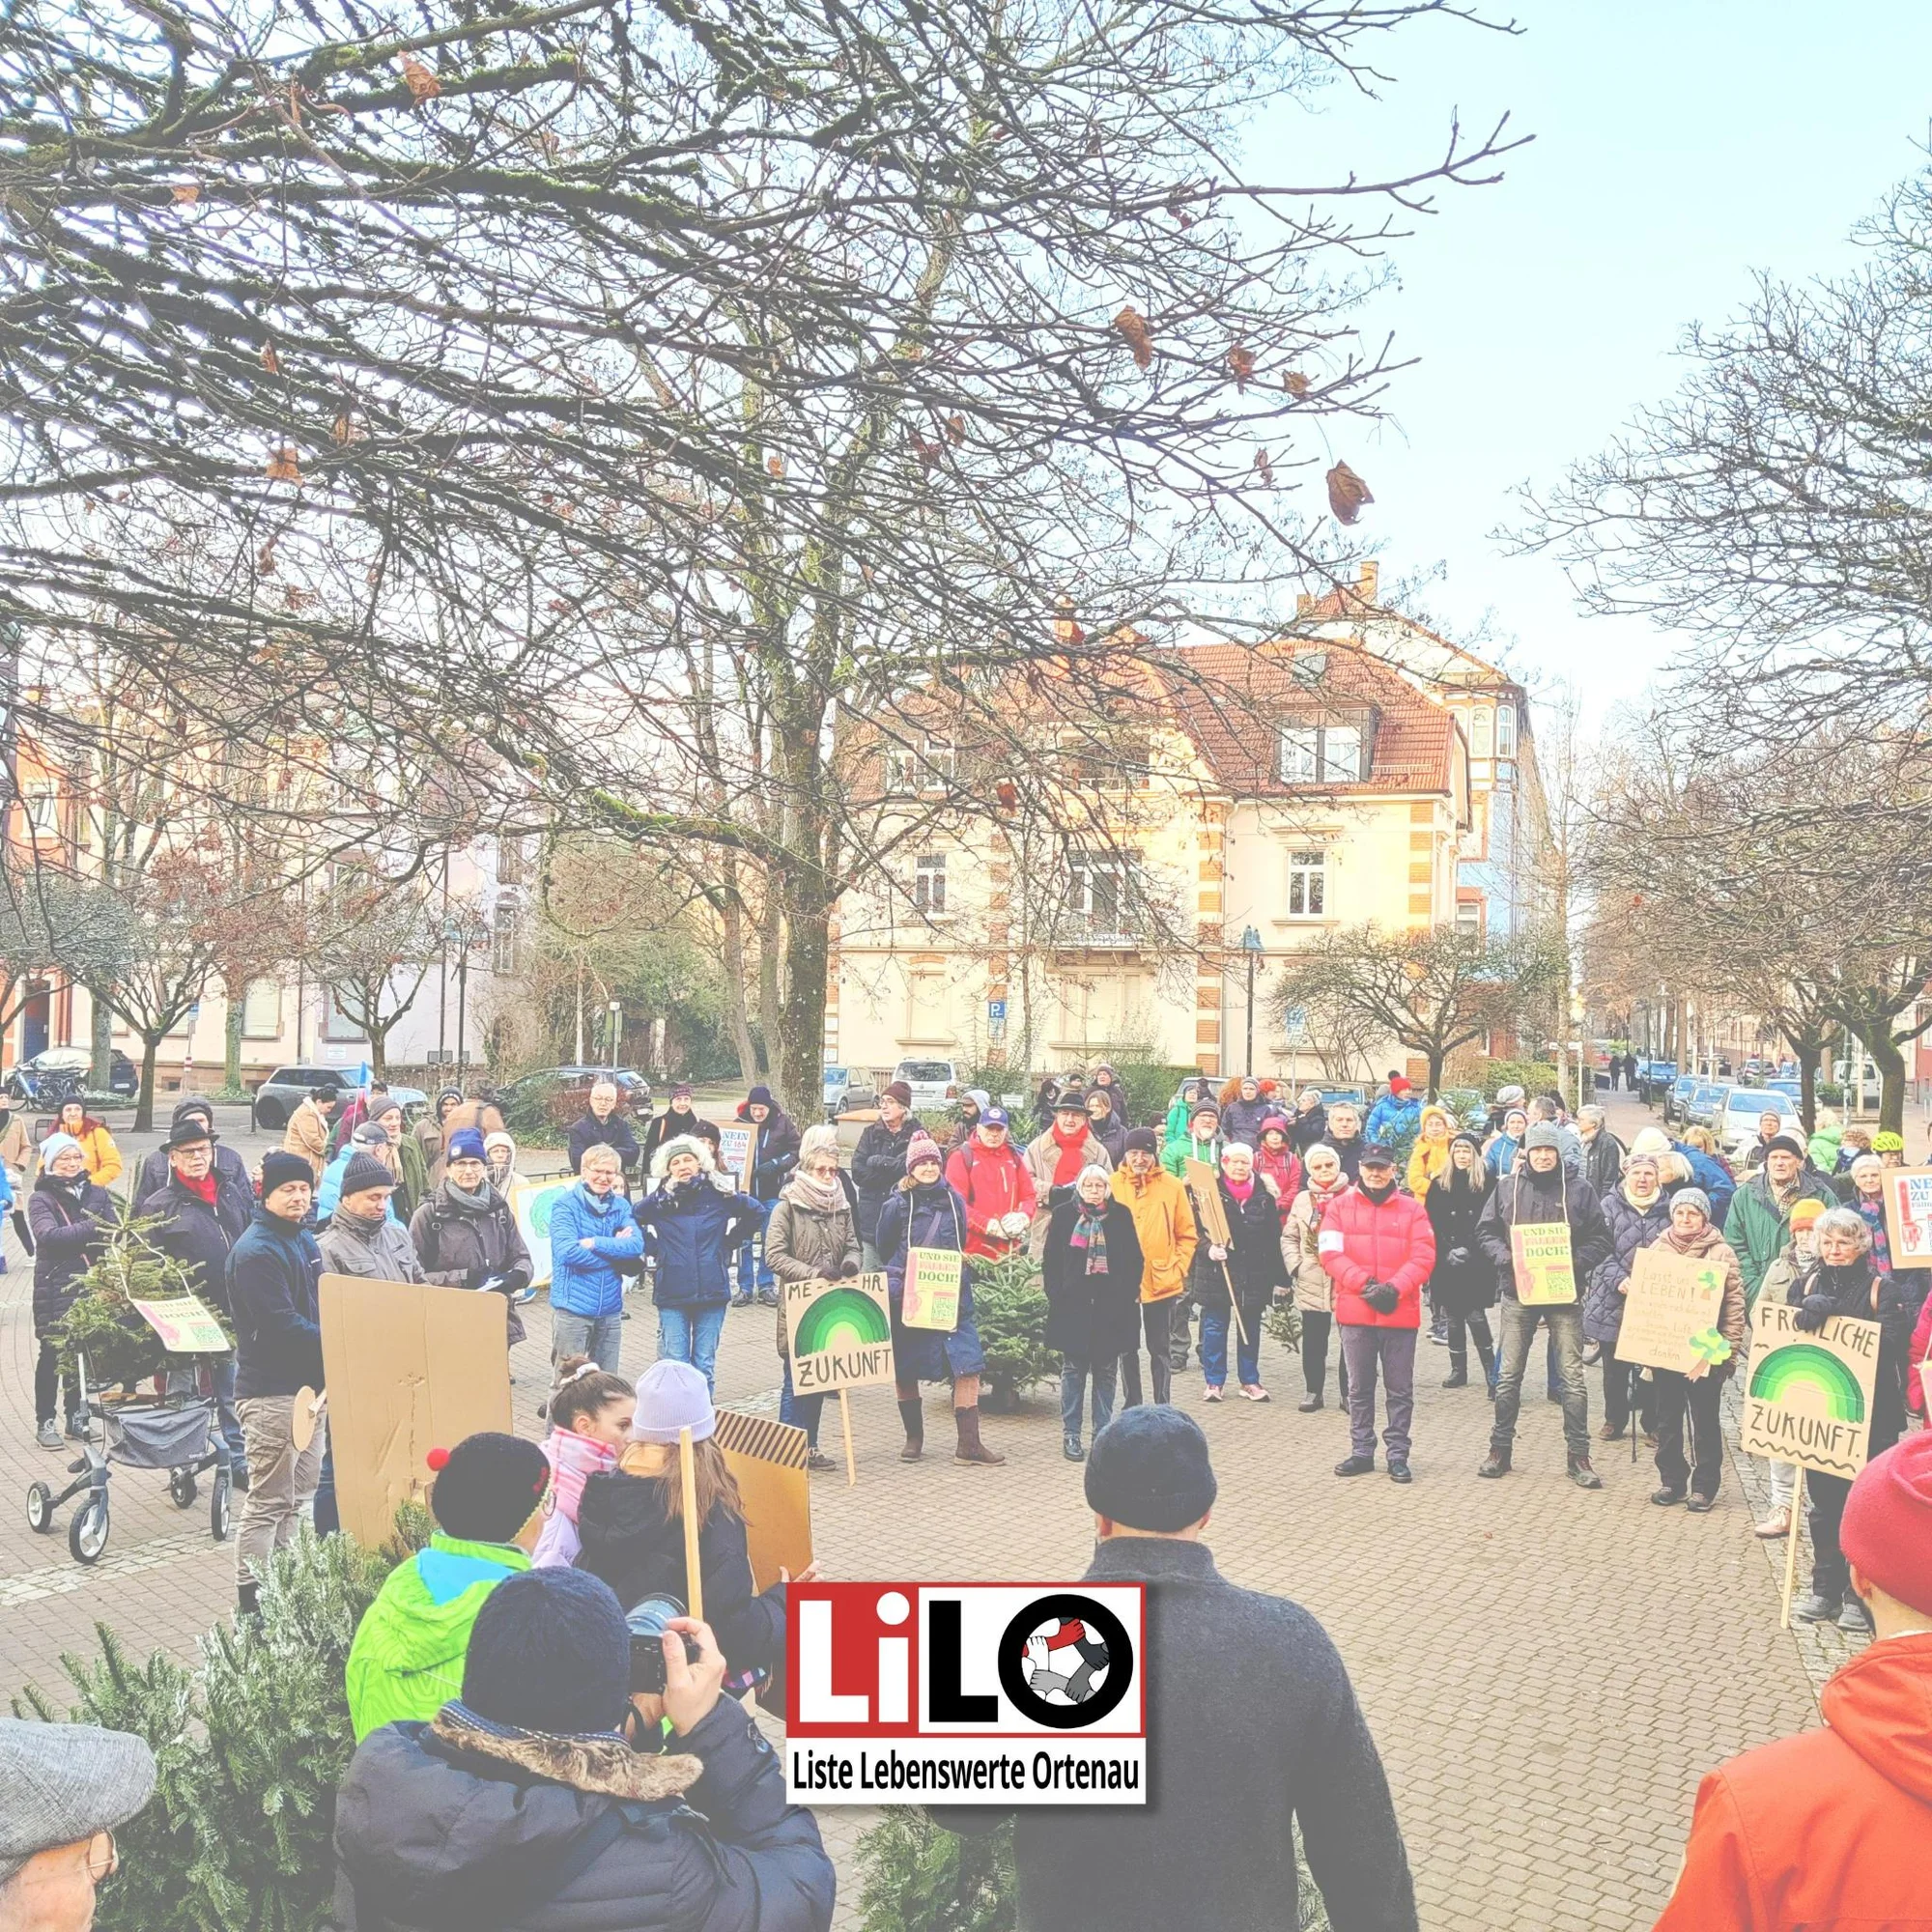 Liste Lebenswerte Ortenau - LiLO.
Demonstration für Bäume: Ruf nach Verkehrswende und Naturschutz. Gemeinsam mit 250 Menschen gingen wir am Freitag für den Erhalt der Bäume in Offenburg auf die Straße.